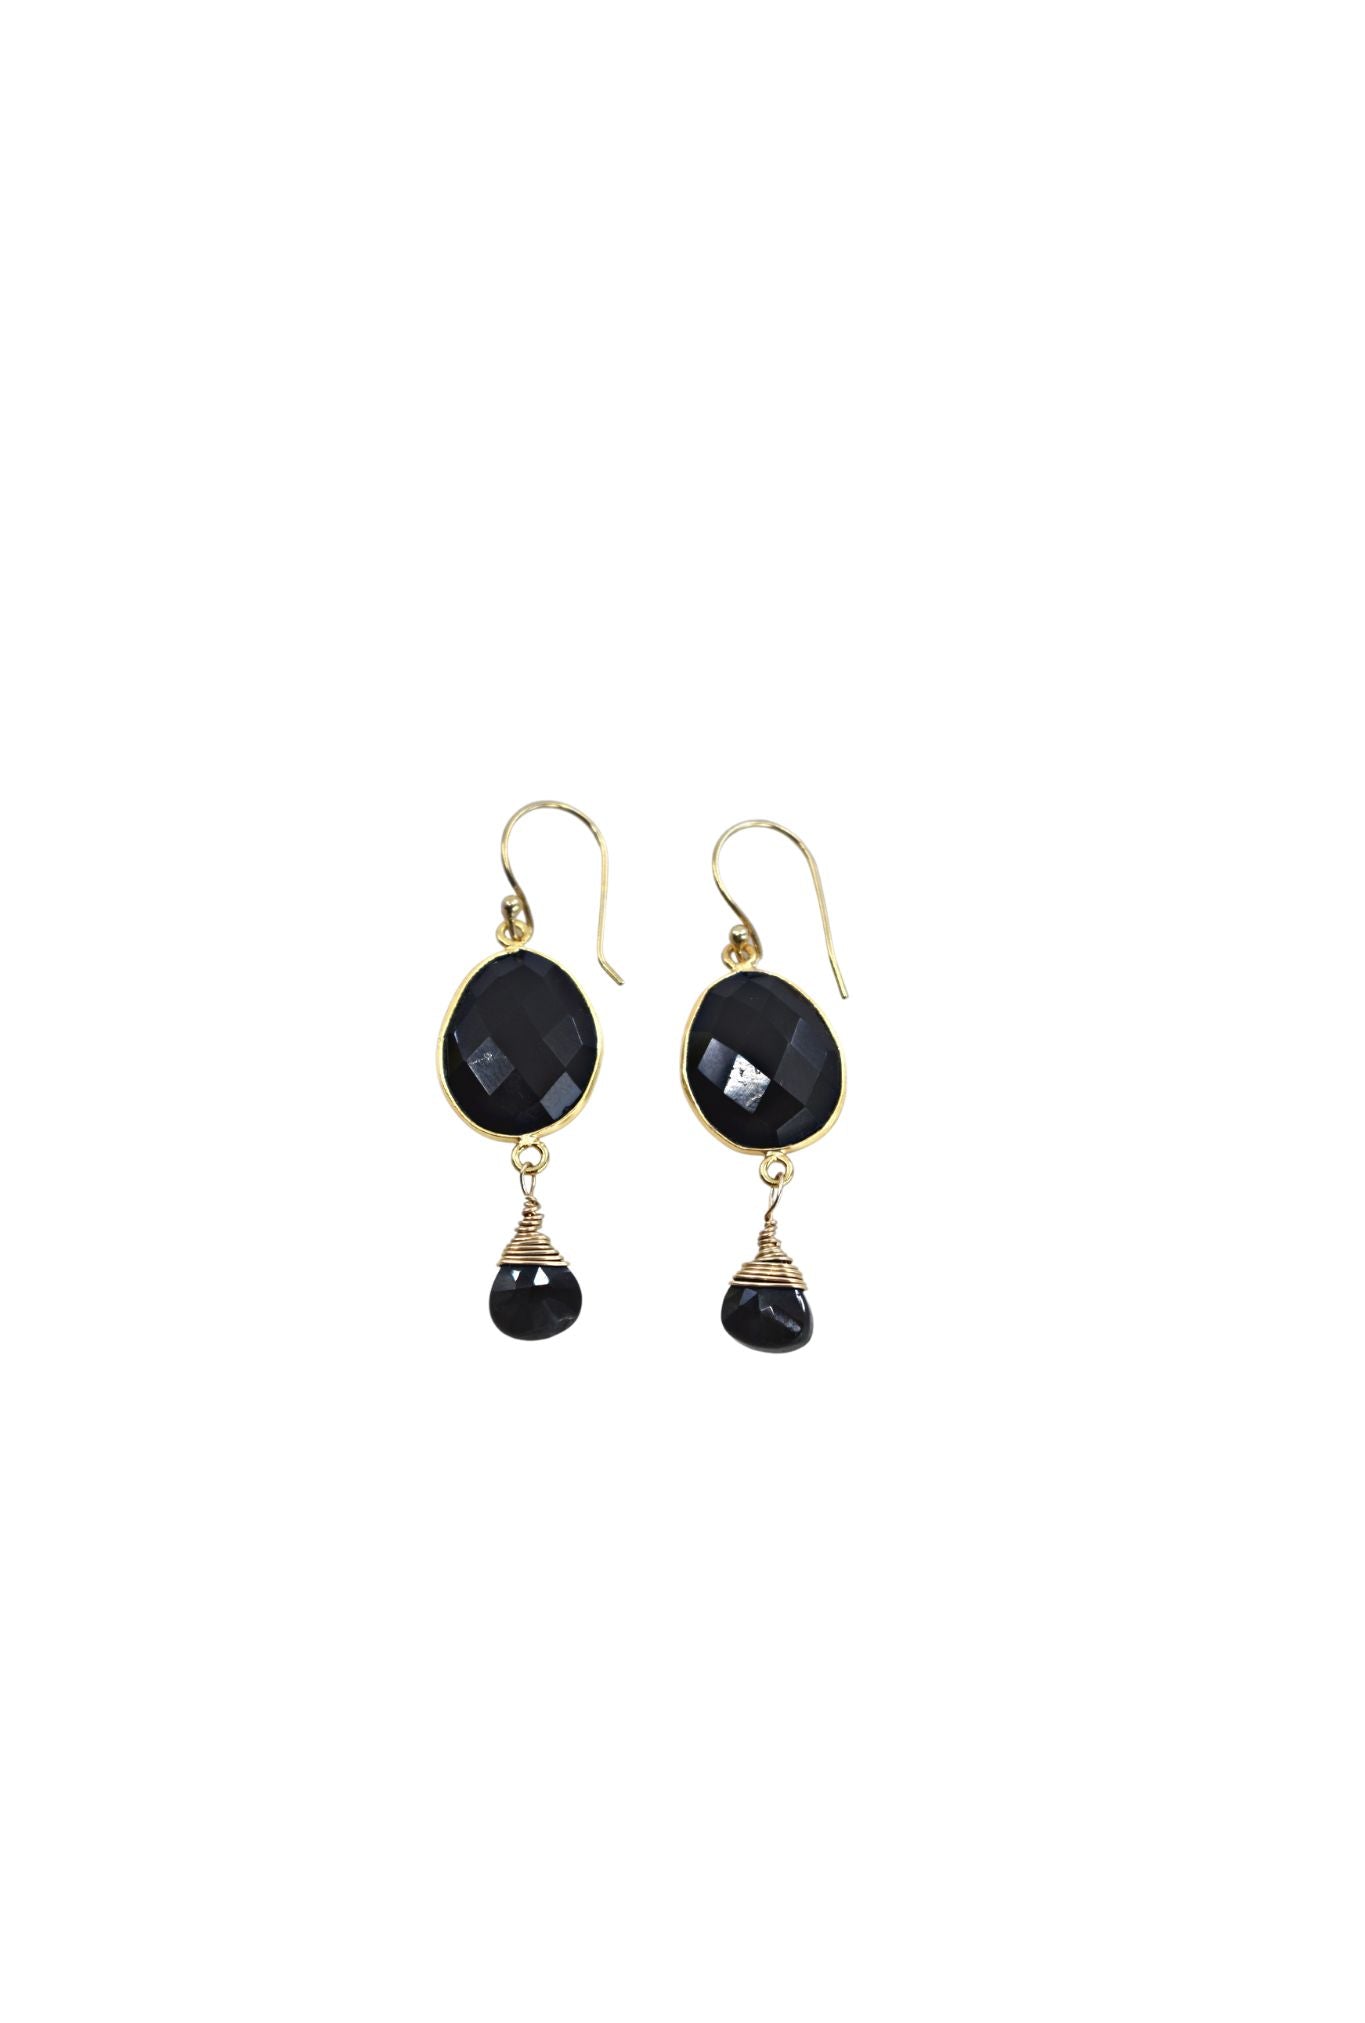 Victoria Ojai Earring in Black Onyx